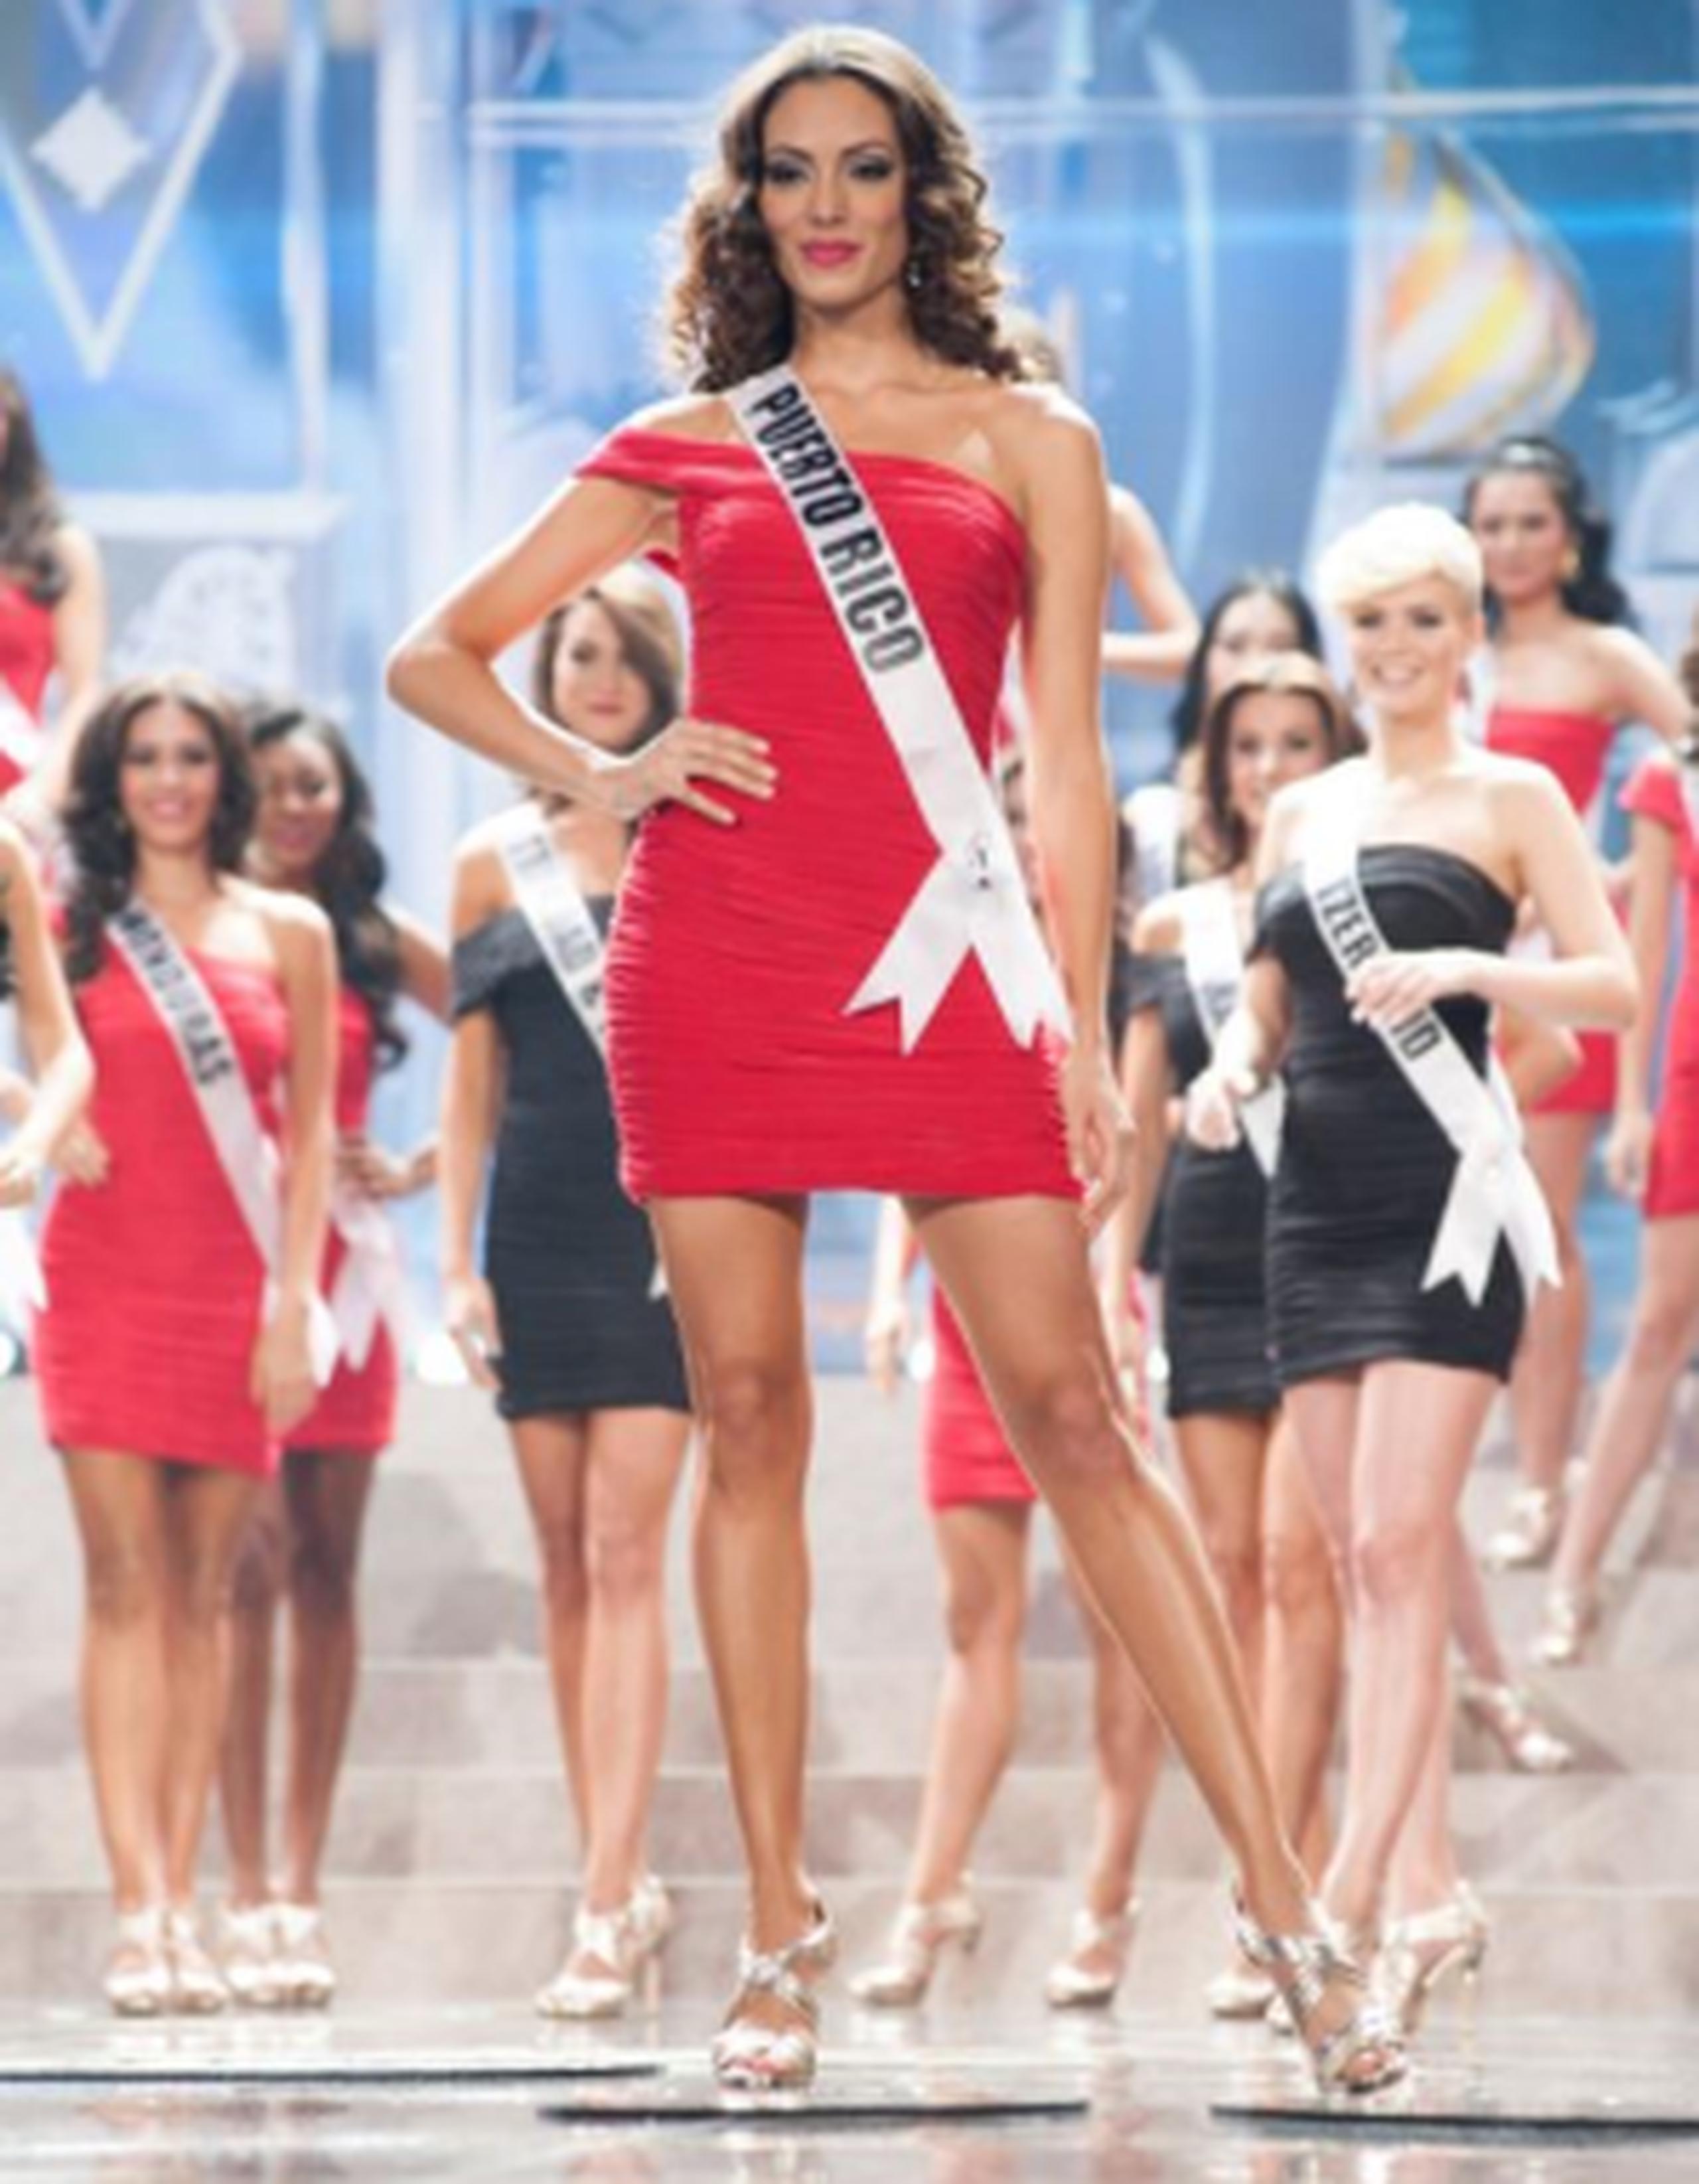 Con su publicación, la semifinalista de Miss Universe 2013 intentó demostrar que que la vida no es así de “perfecta” como aparenta ser en las redes. (Archivo)